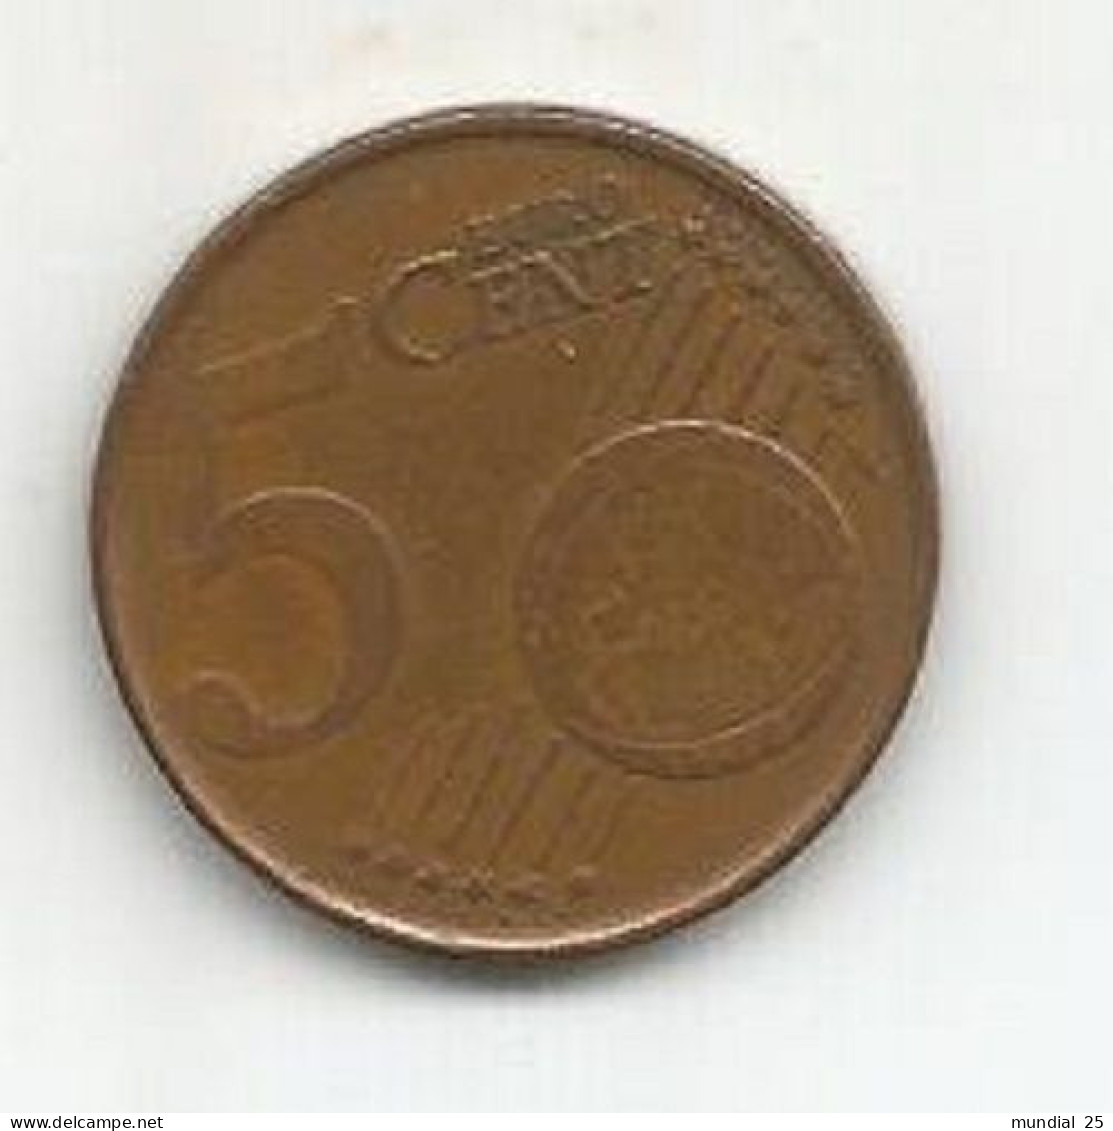 BELGIUM 5 EURO CENT 1999 - Belgique